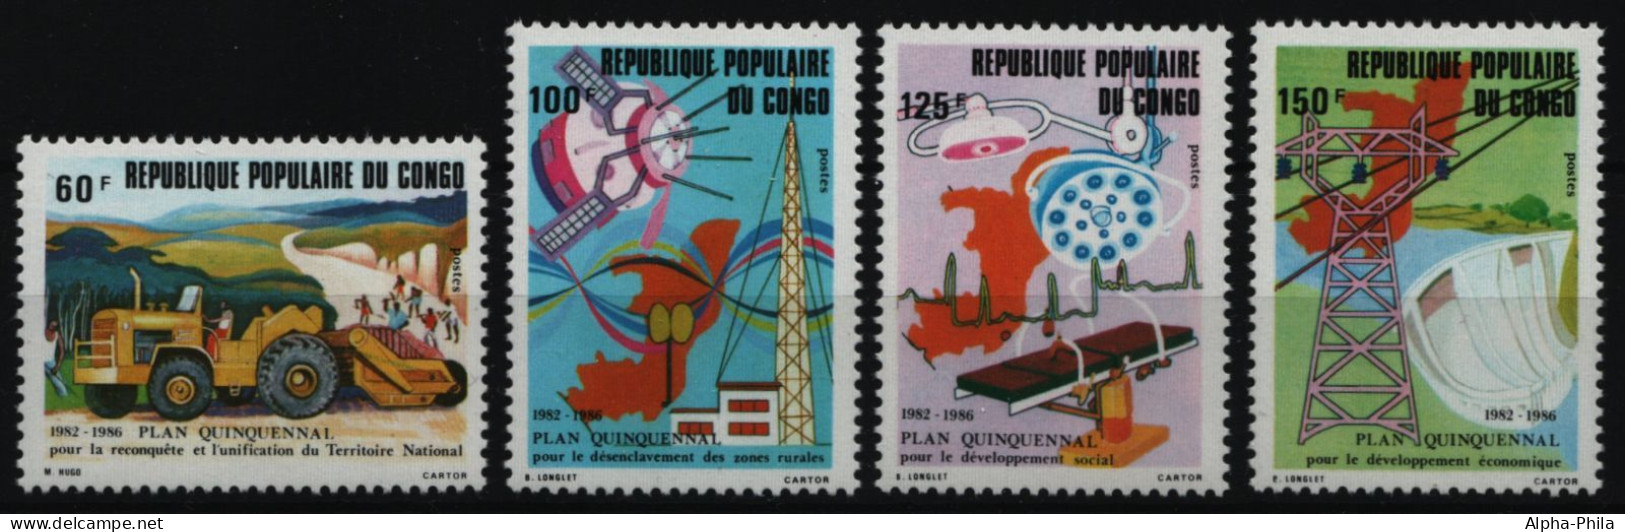 Kongo-Brazzaville 1982 - Mi-Nr. 870-873 ** - MNH - Fünfjahresplan - Ungebraucht